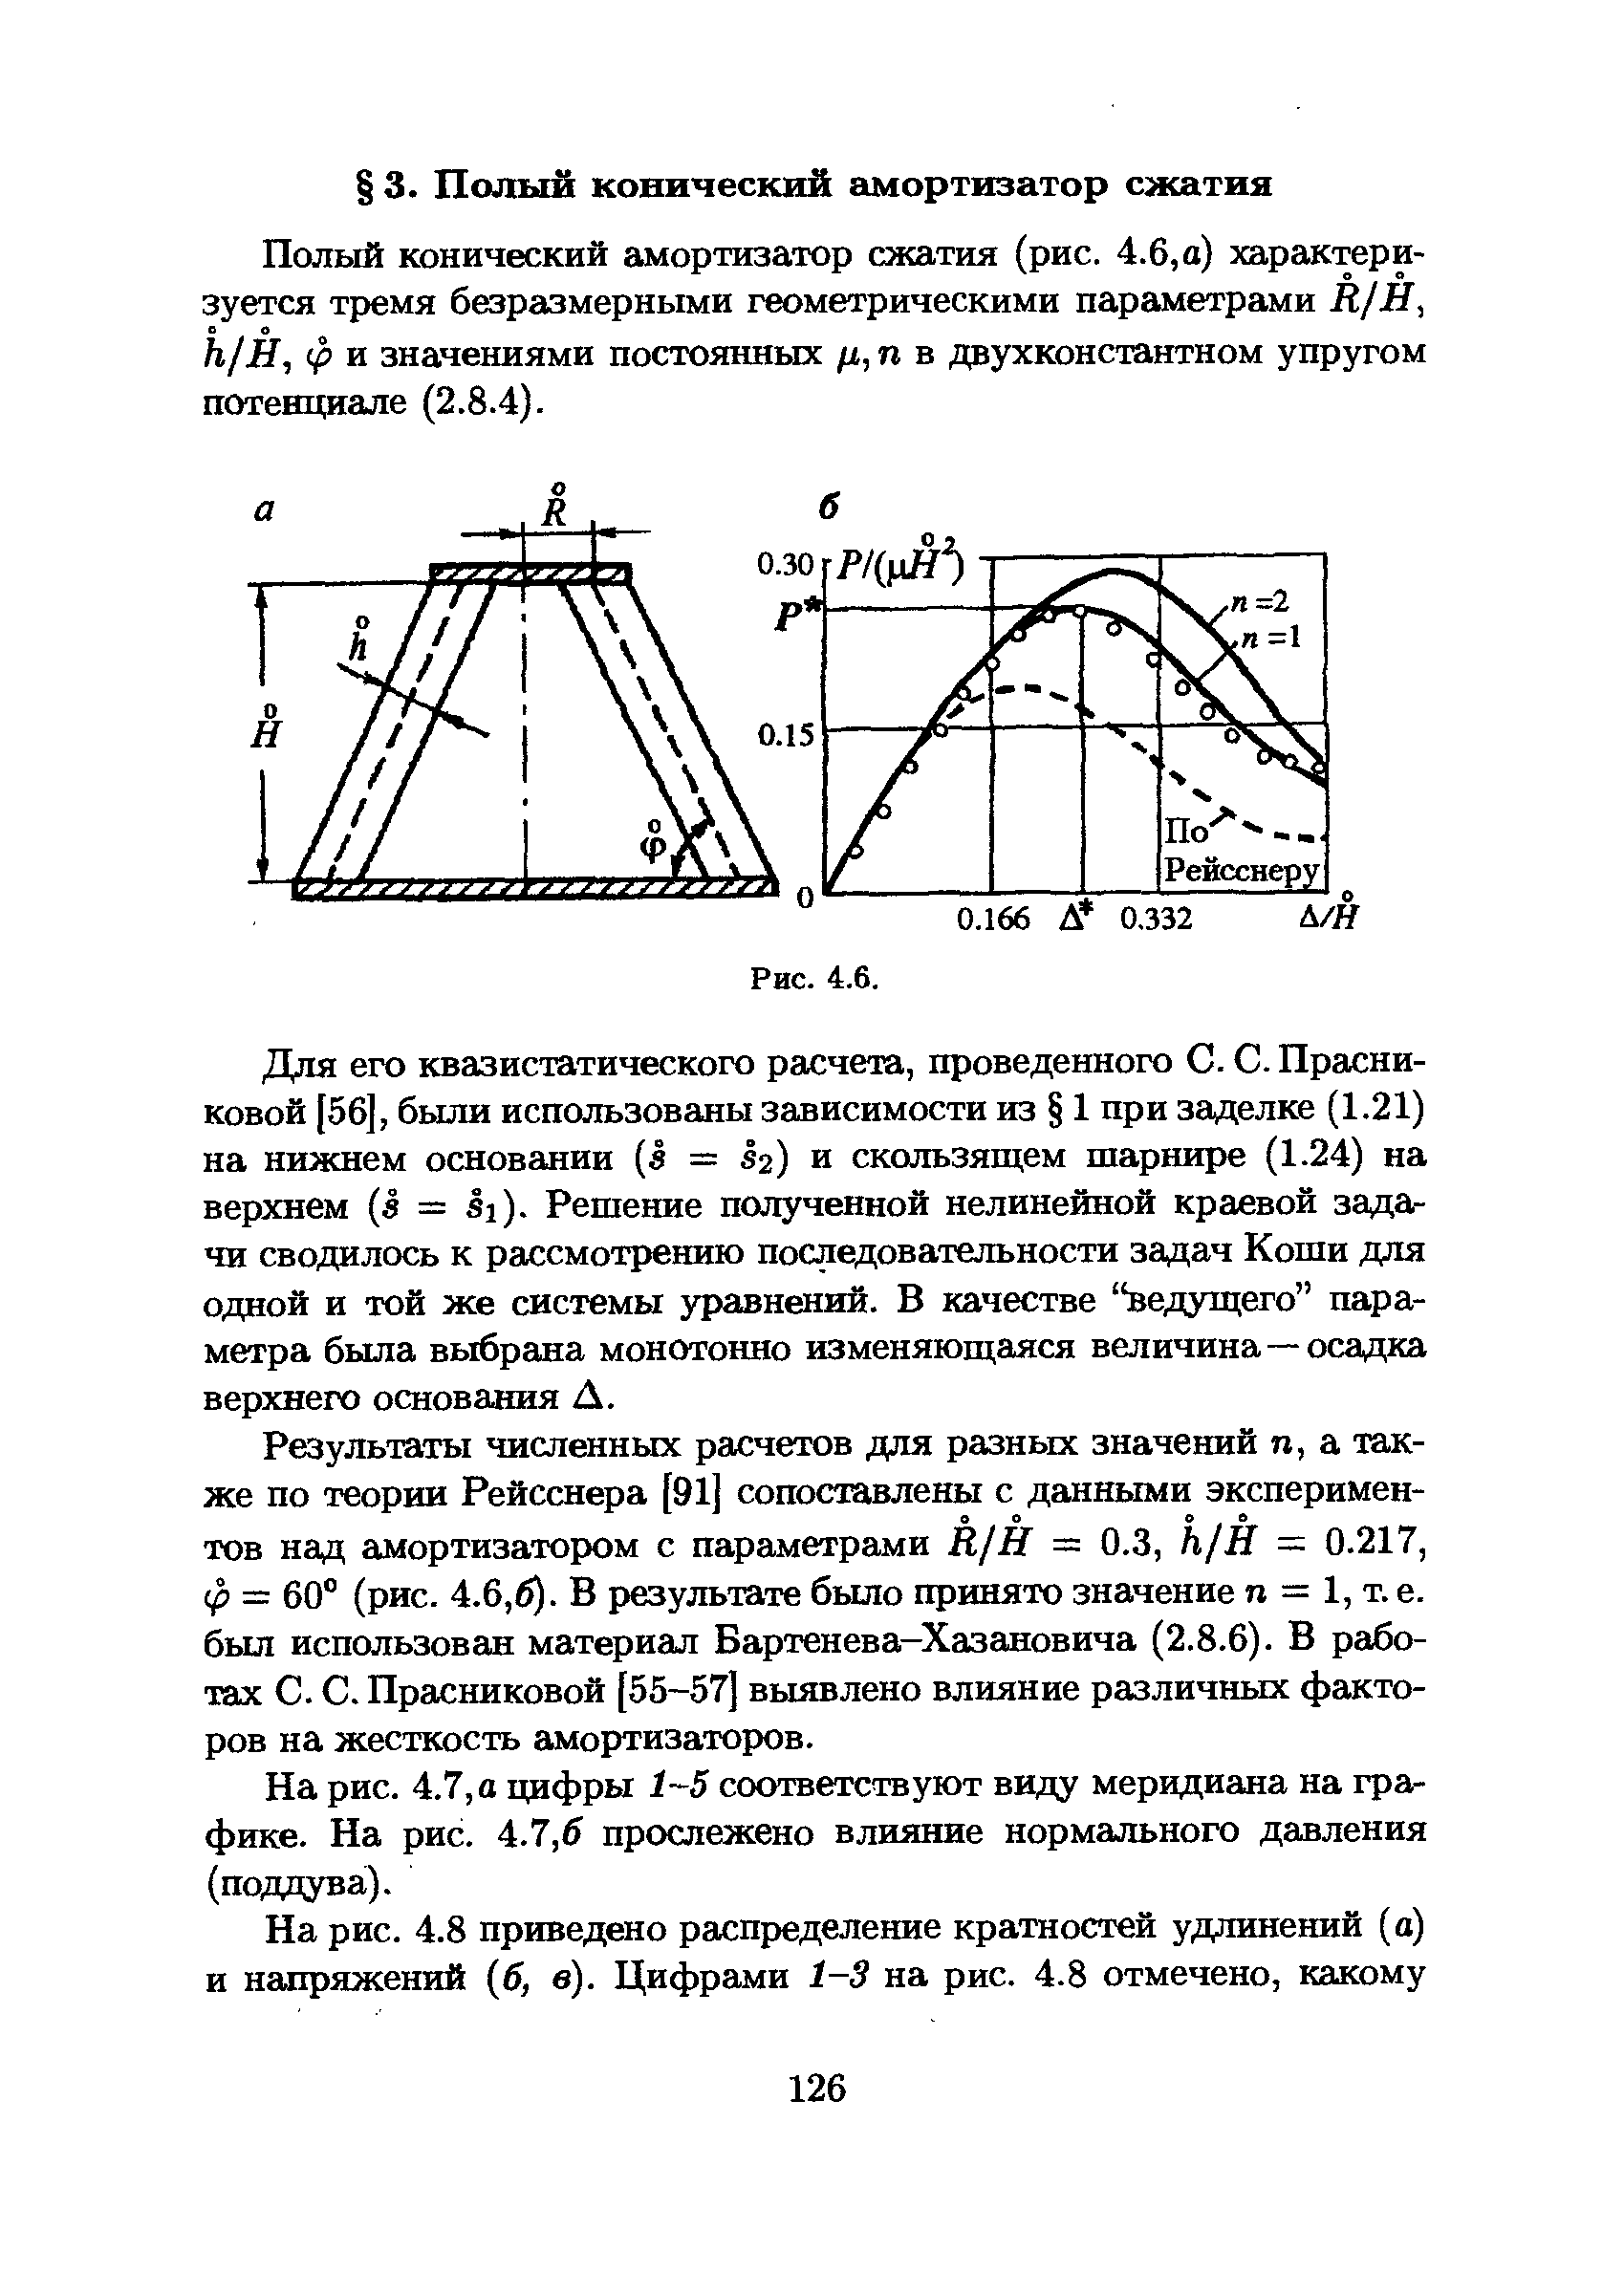 Полый конический амортизатор сжатия (рис. 4.6, а) характеризуется тремя безразмерными геометрическими параметрами Д/Я, h/H, ф и значениями постоянных ц,п в двухконстантном упругом потенциале (2.8.4).
